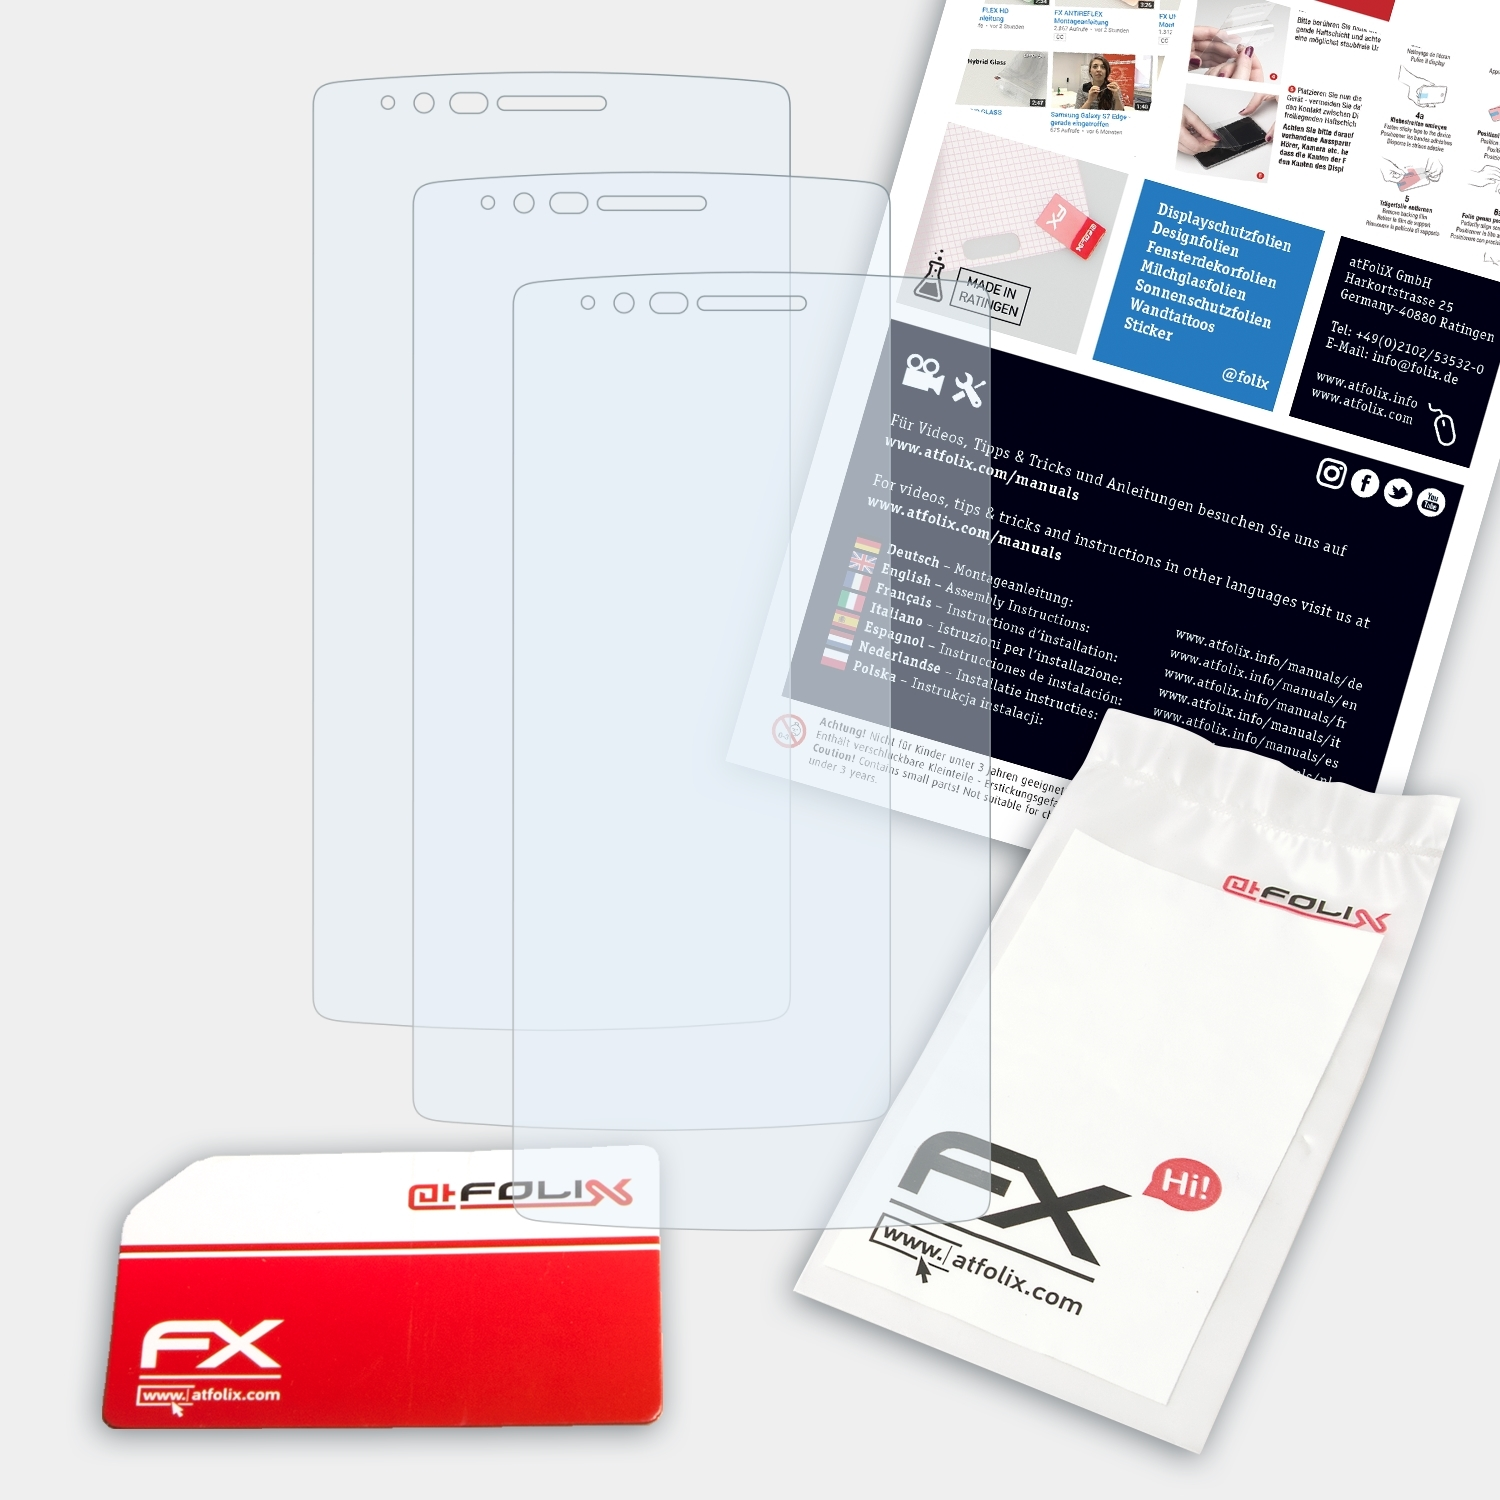 ATFOLIX 3x FX-Clear Displayschutz(für LG G 2) Flex